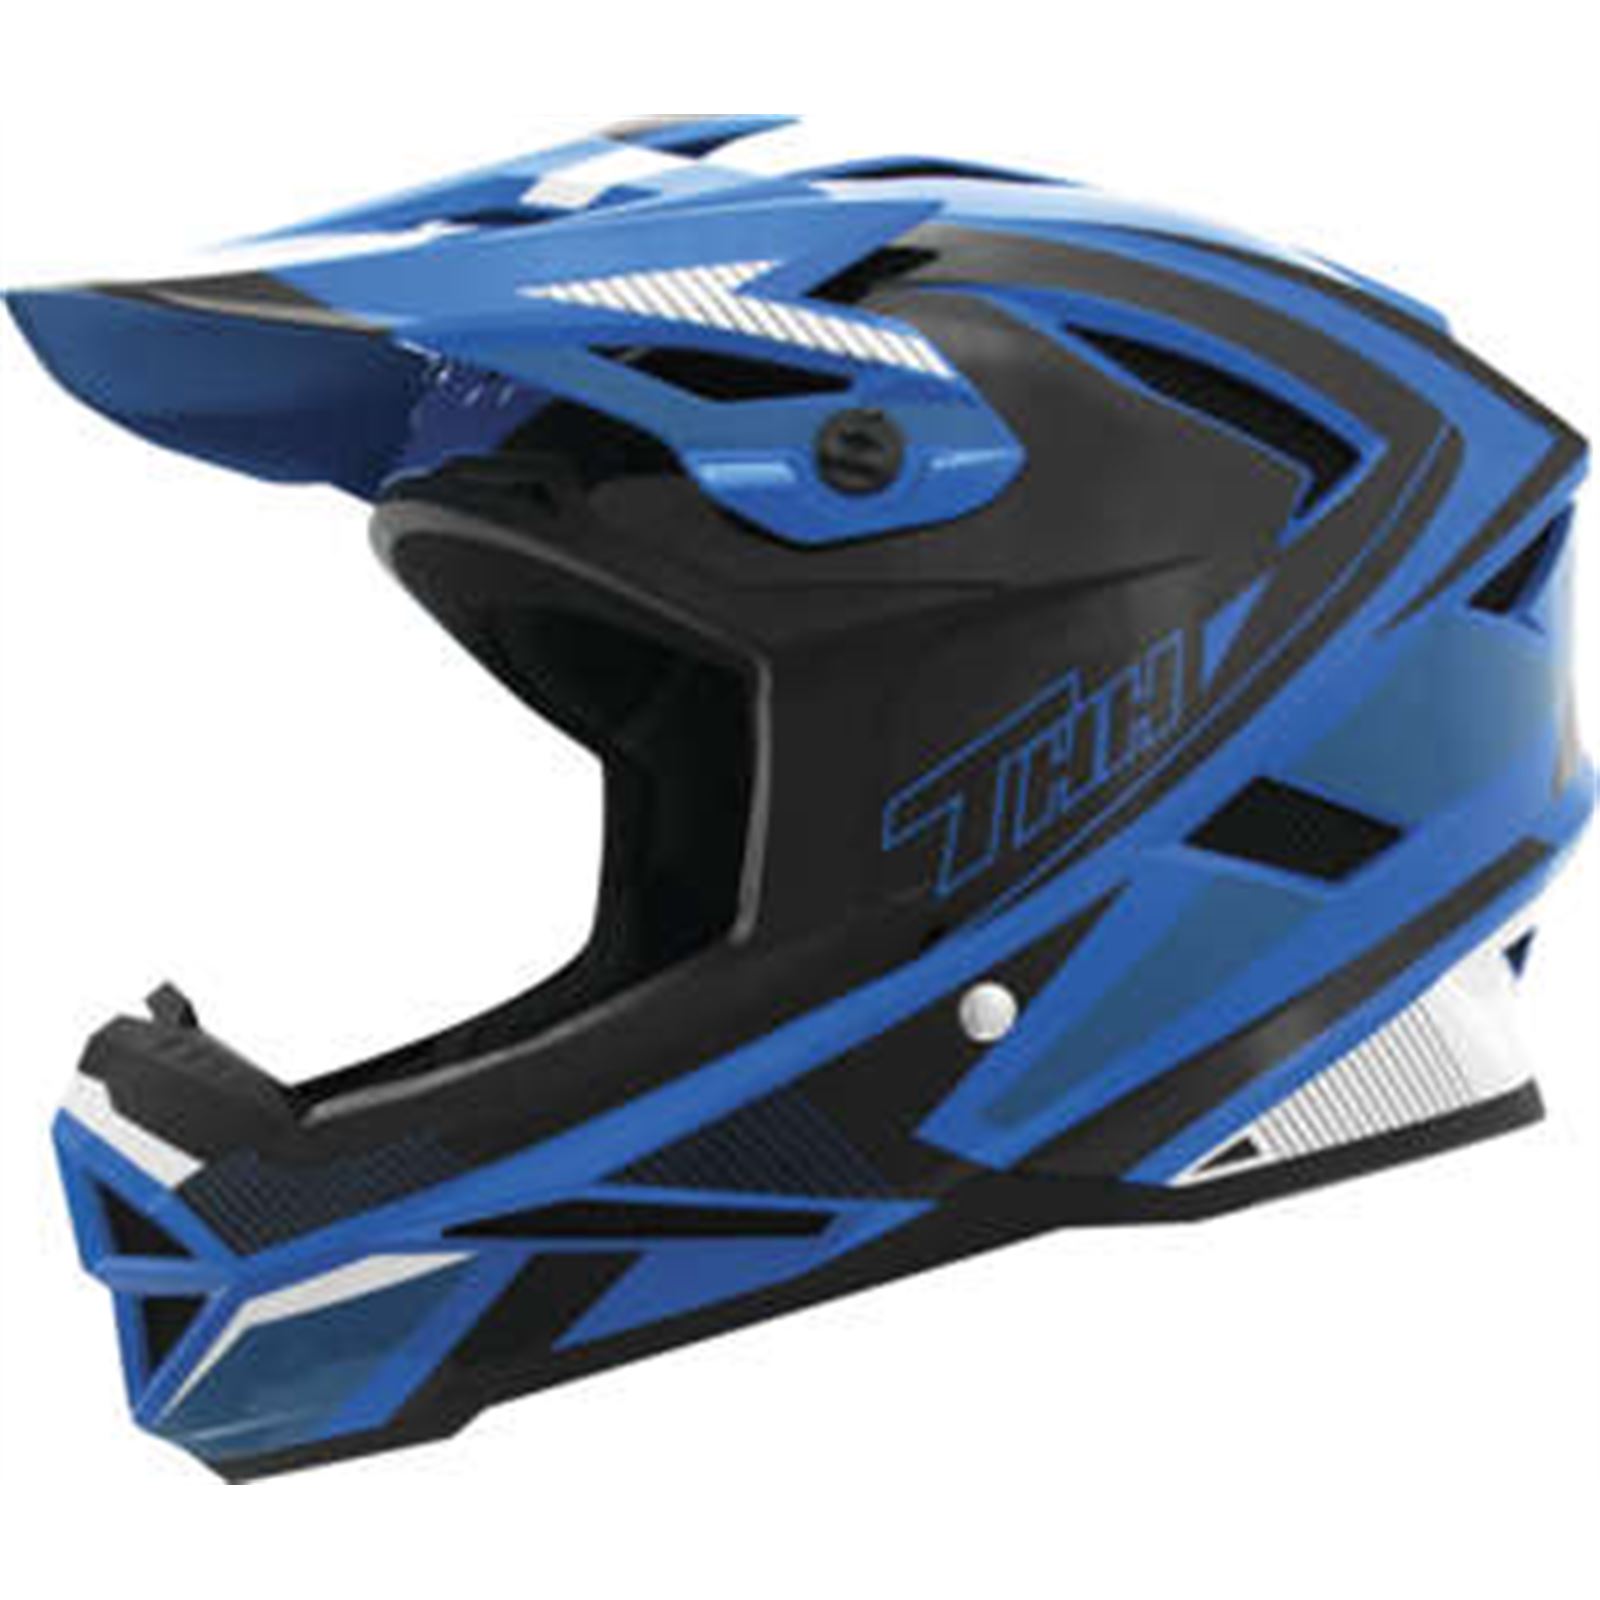 THH Helmets T-42 Acceler Helmet Acceler Blue/White - Medium